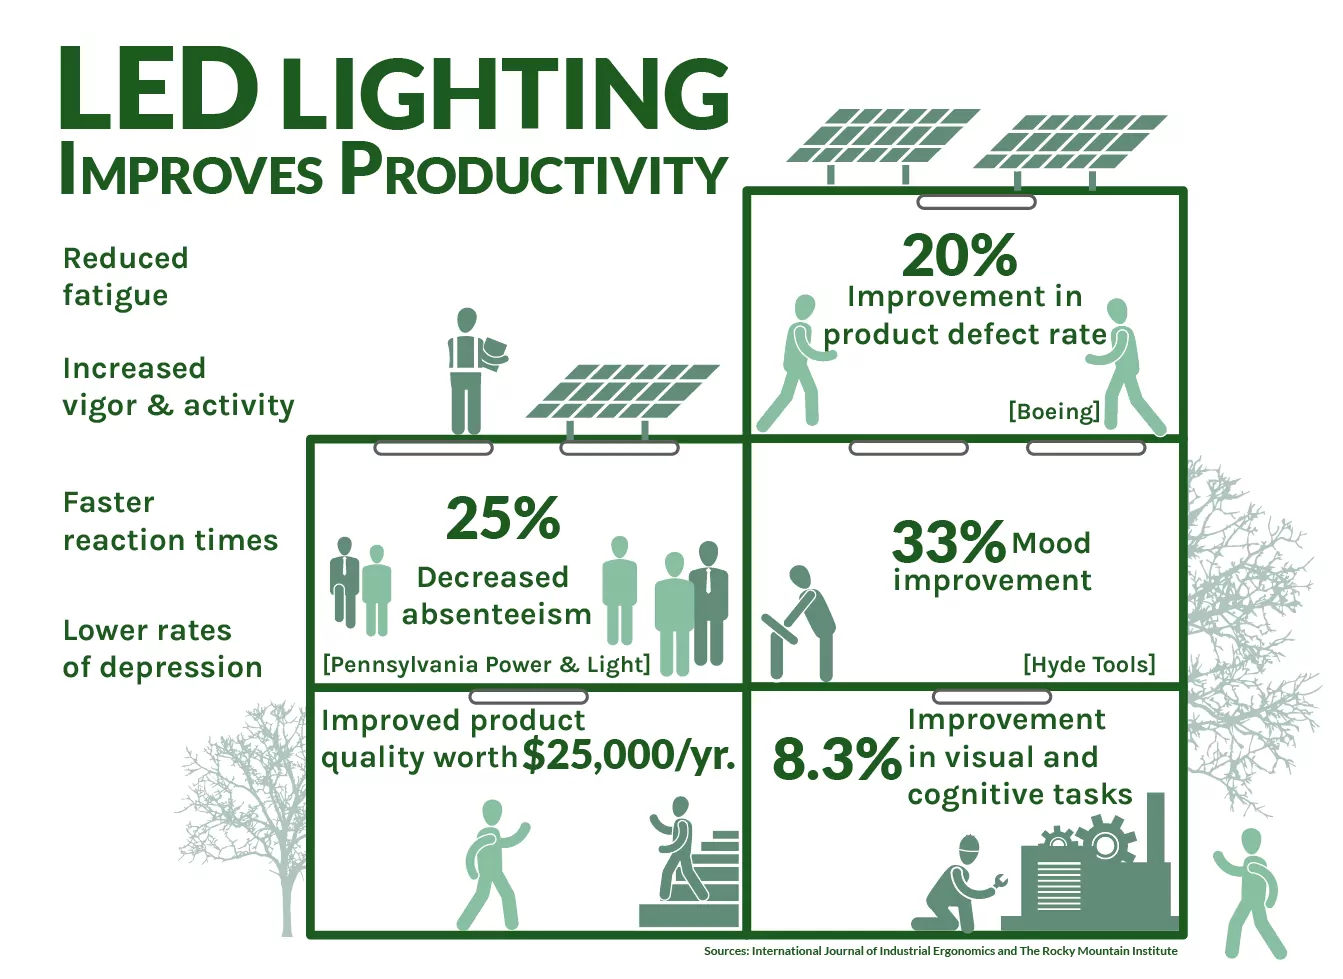 LED Lighting improves productivity